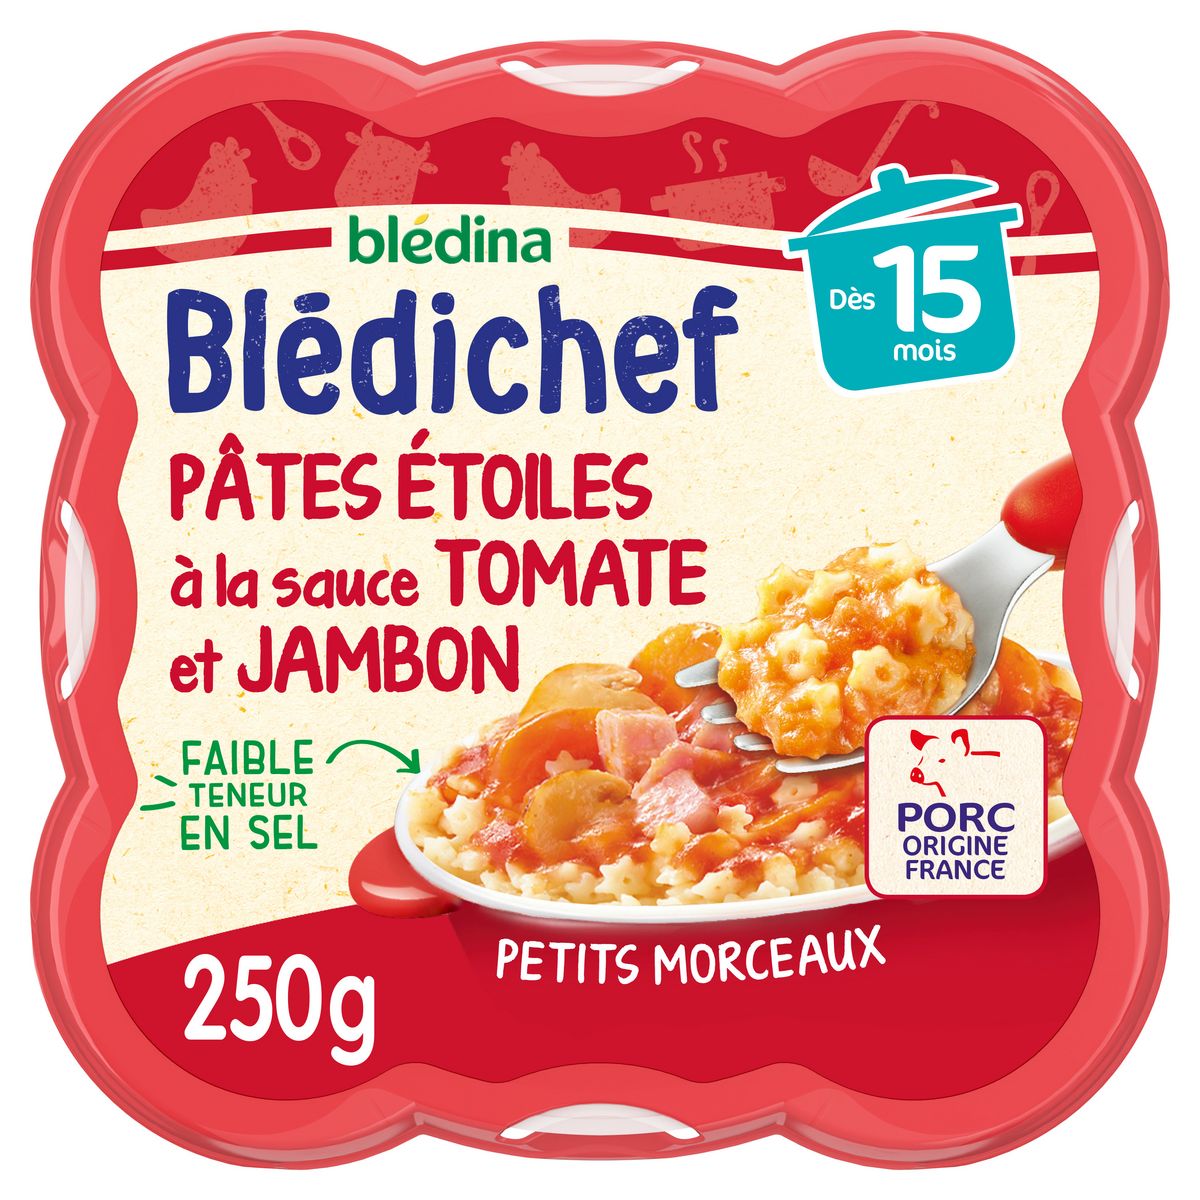 BLEDINA Blédichef assiette pâtes étoiles tomate jambon dès 15 mois 250g